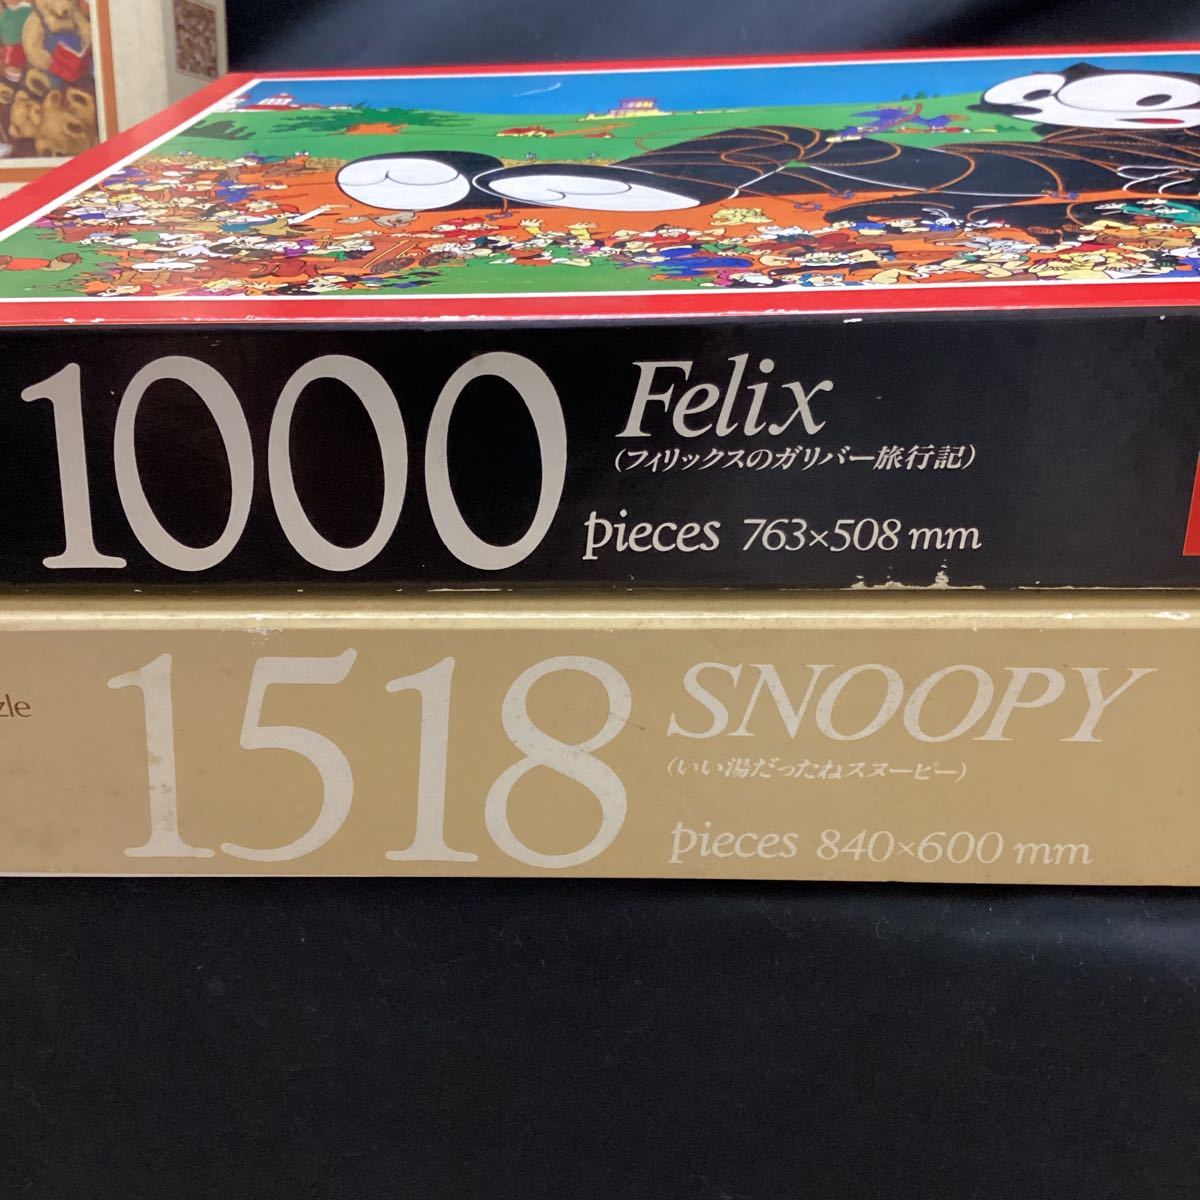 キャラクター　ジグソーパズル 3箱　1000ピース&1518ピース　テディベア　スヌーピー フィリックス　Felix SNOOPY puzzle 海外_画像8